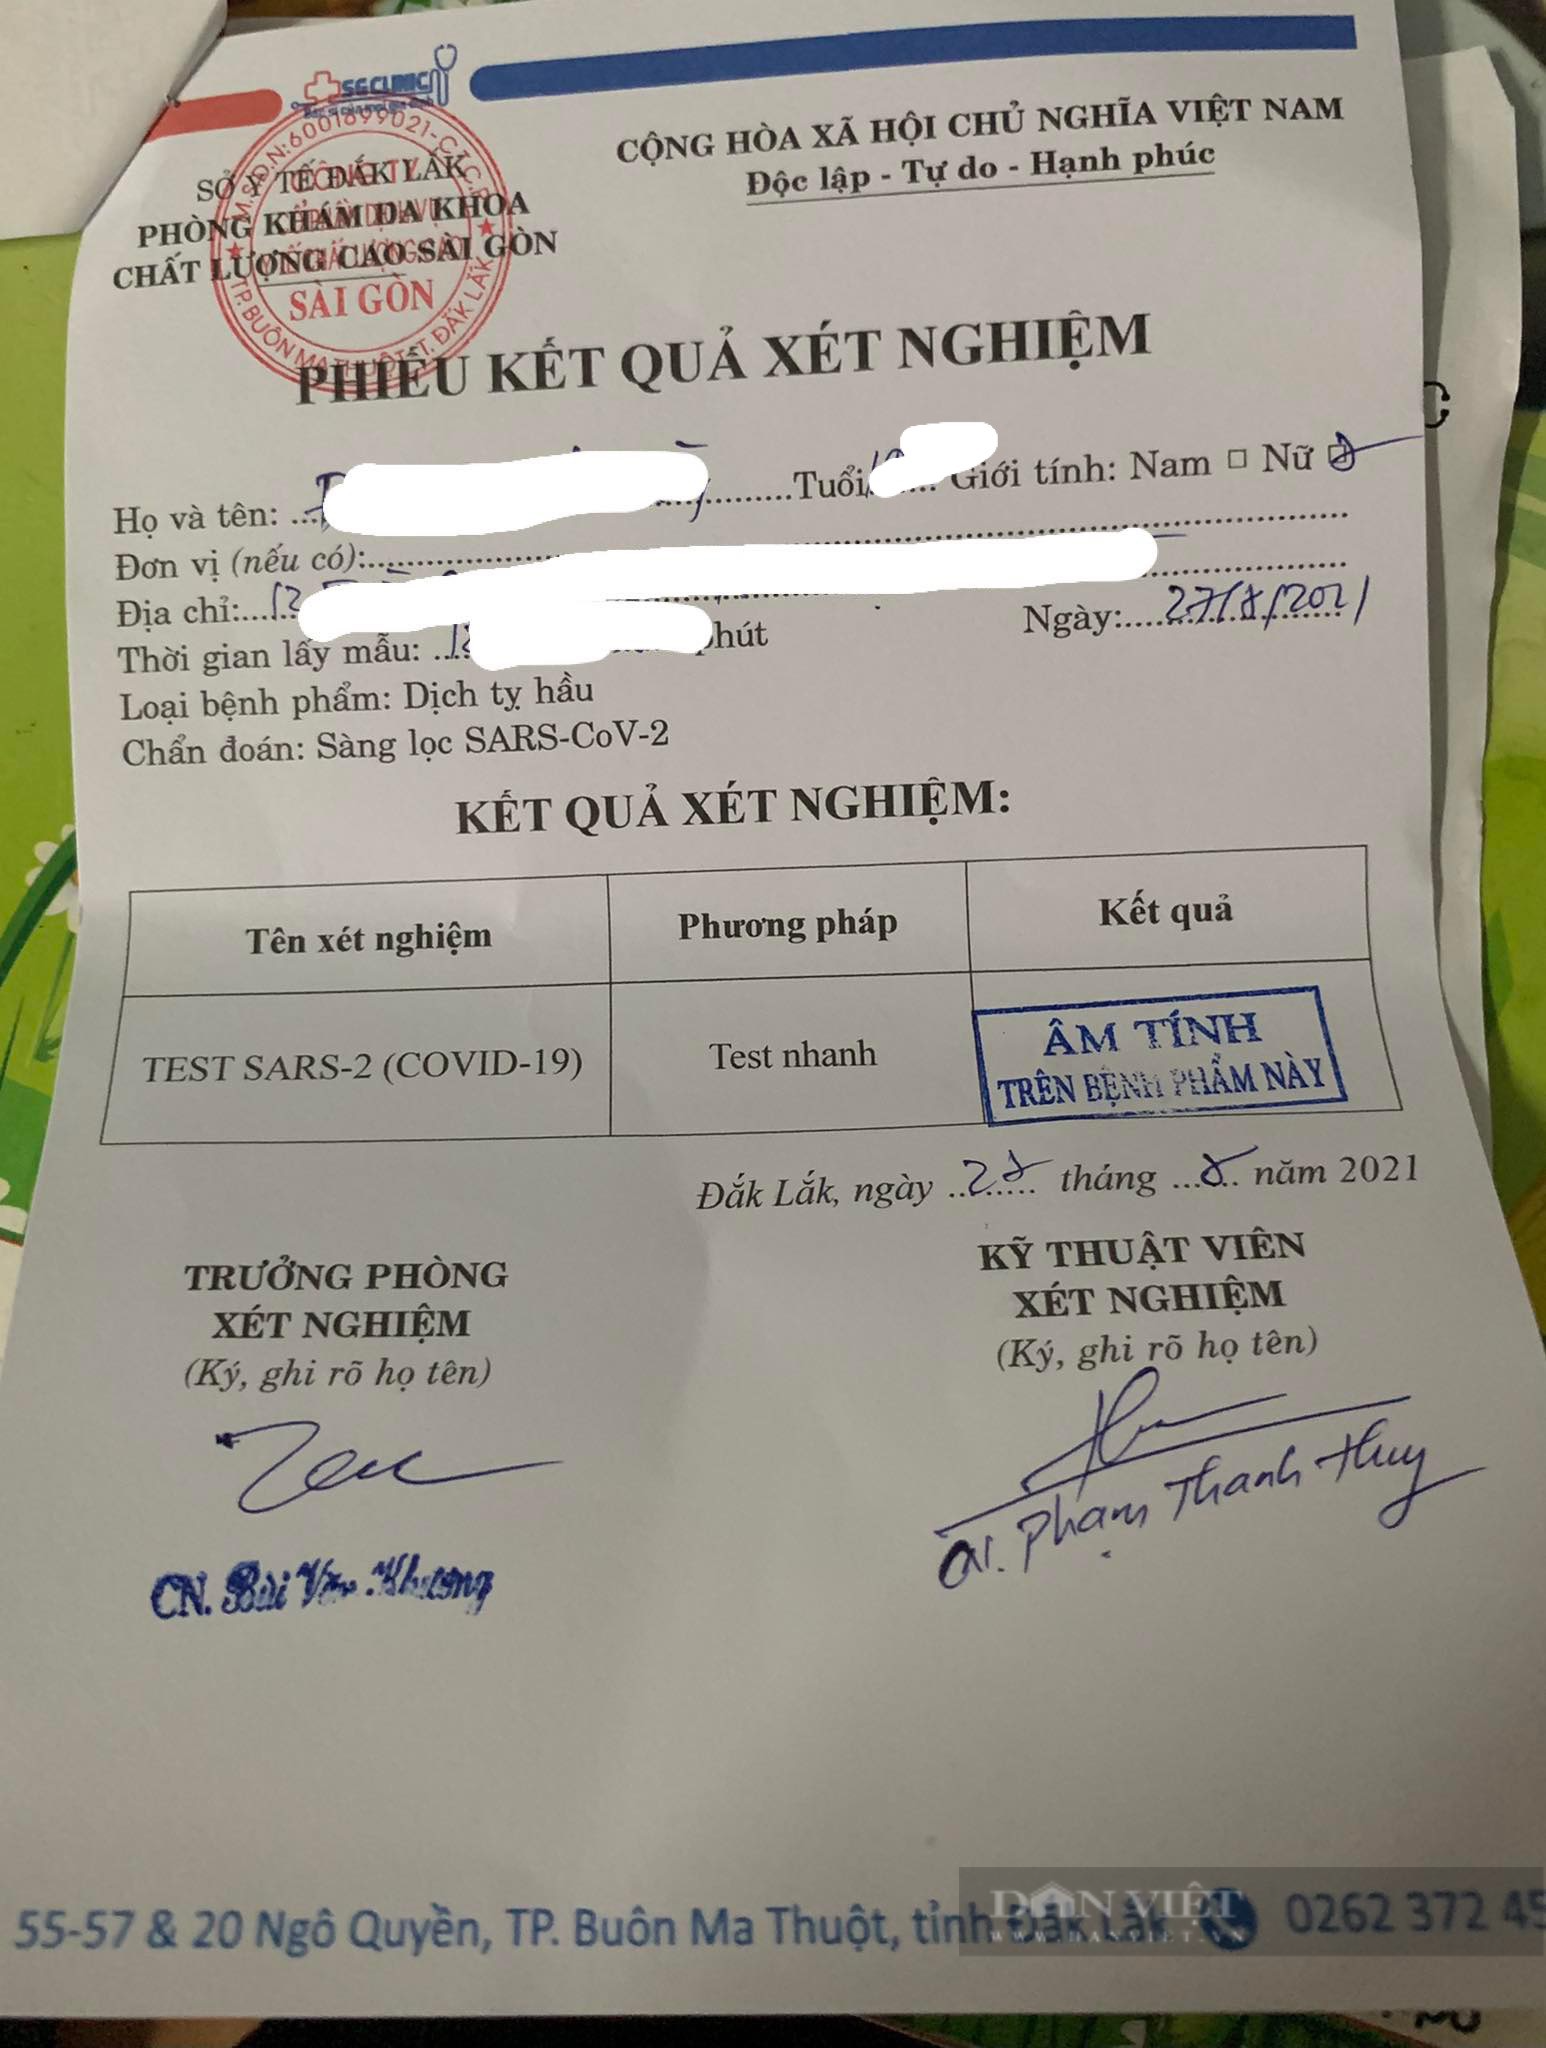 Đắk Lắk: Không cấp phép cho Phòng khám Đa khoa chất lượng cao Sài Gòn test nhanh Covid-19  - Ảnh 2.